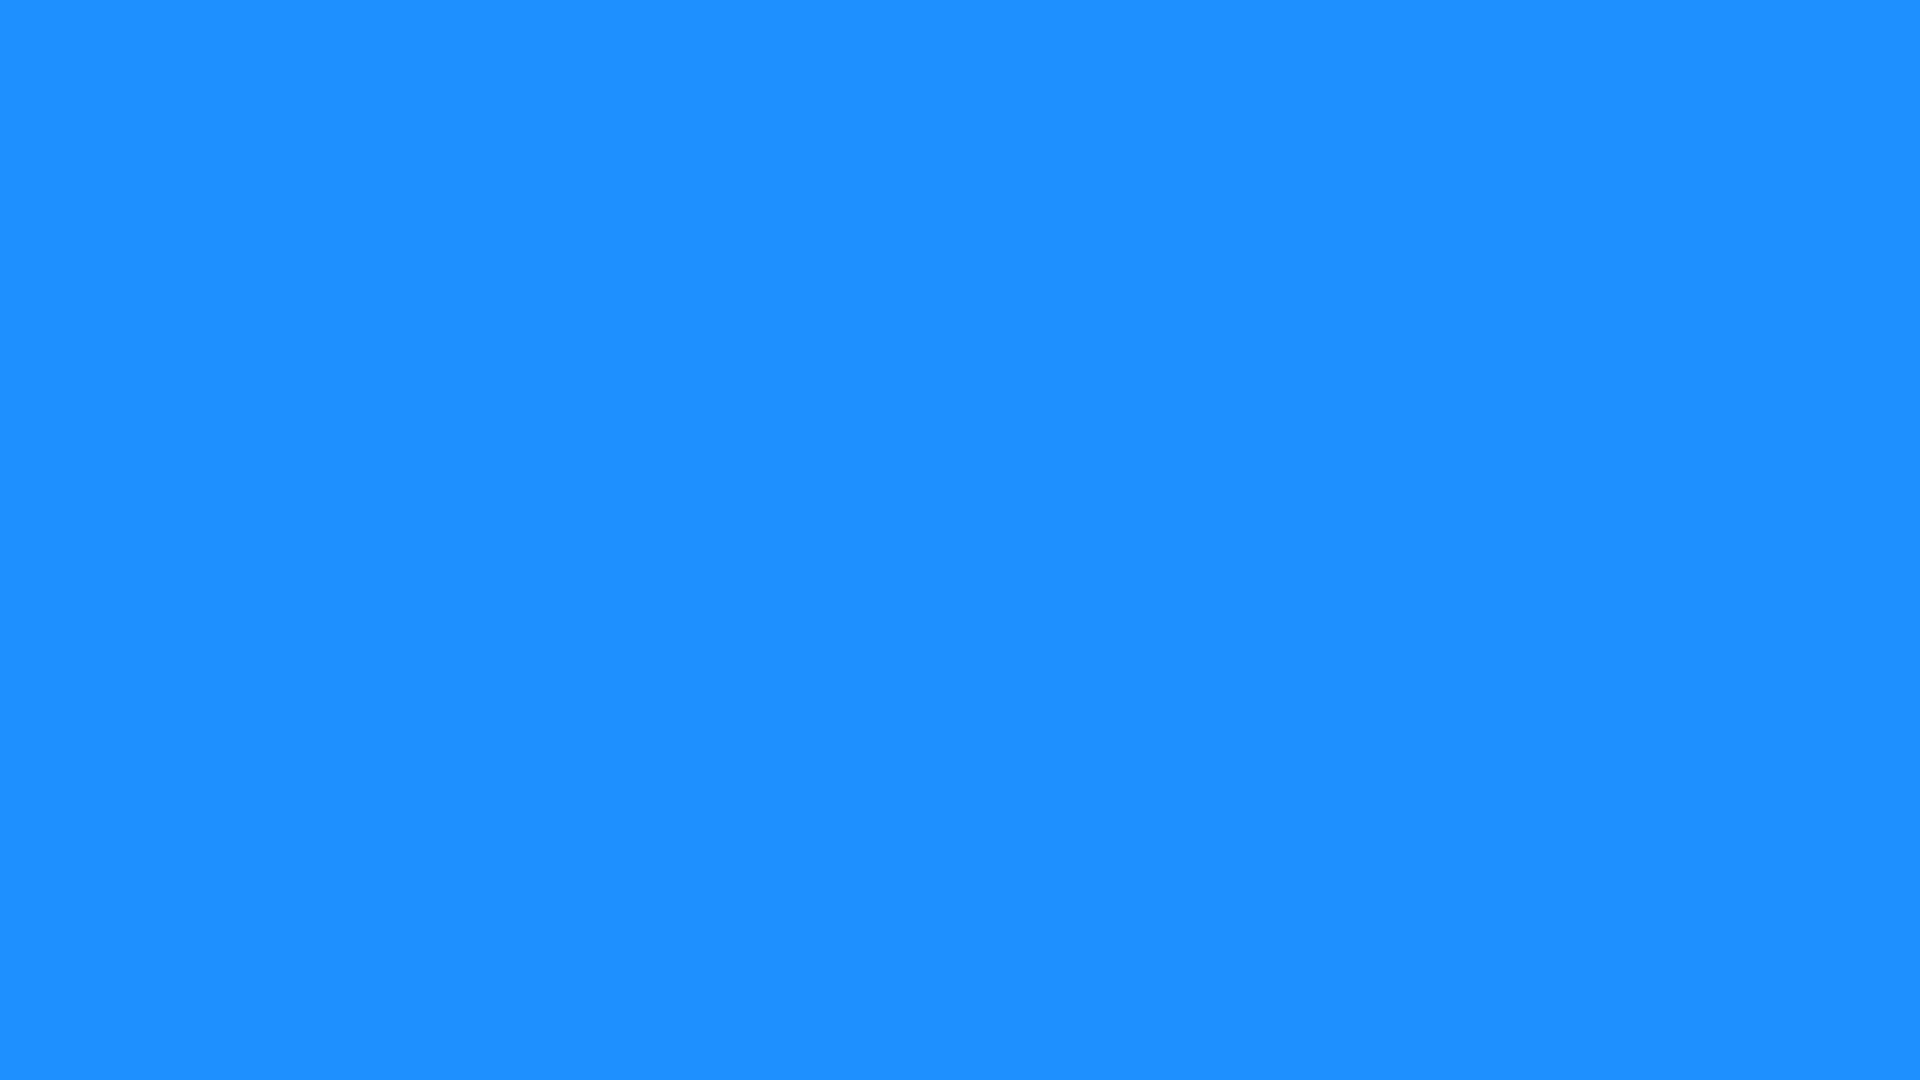 Dodger Blue   Wallpaper High Definition High Quality Widescreen